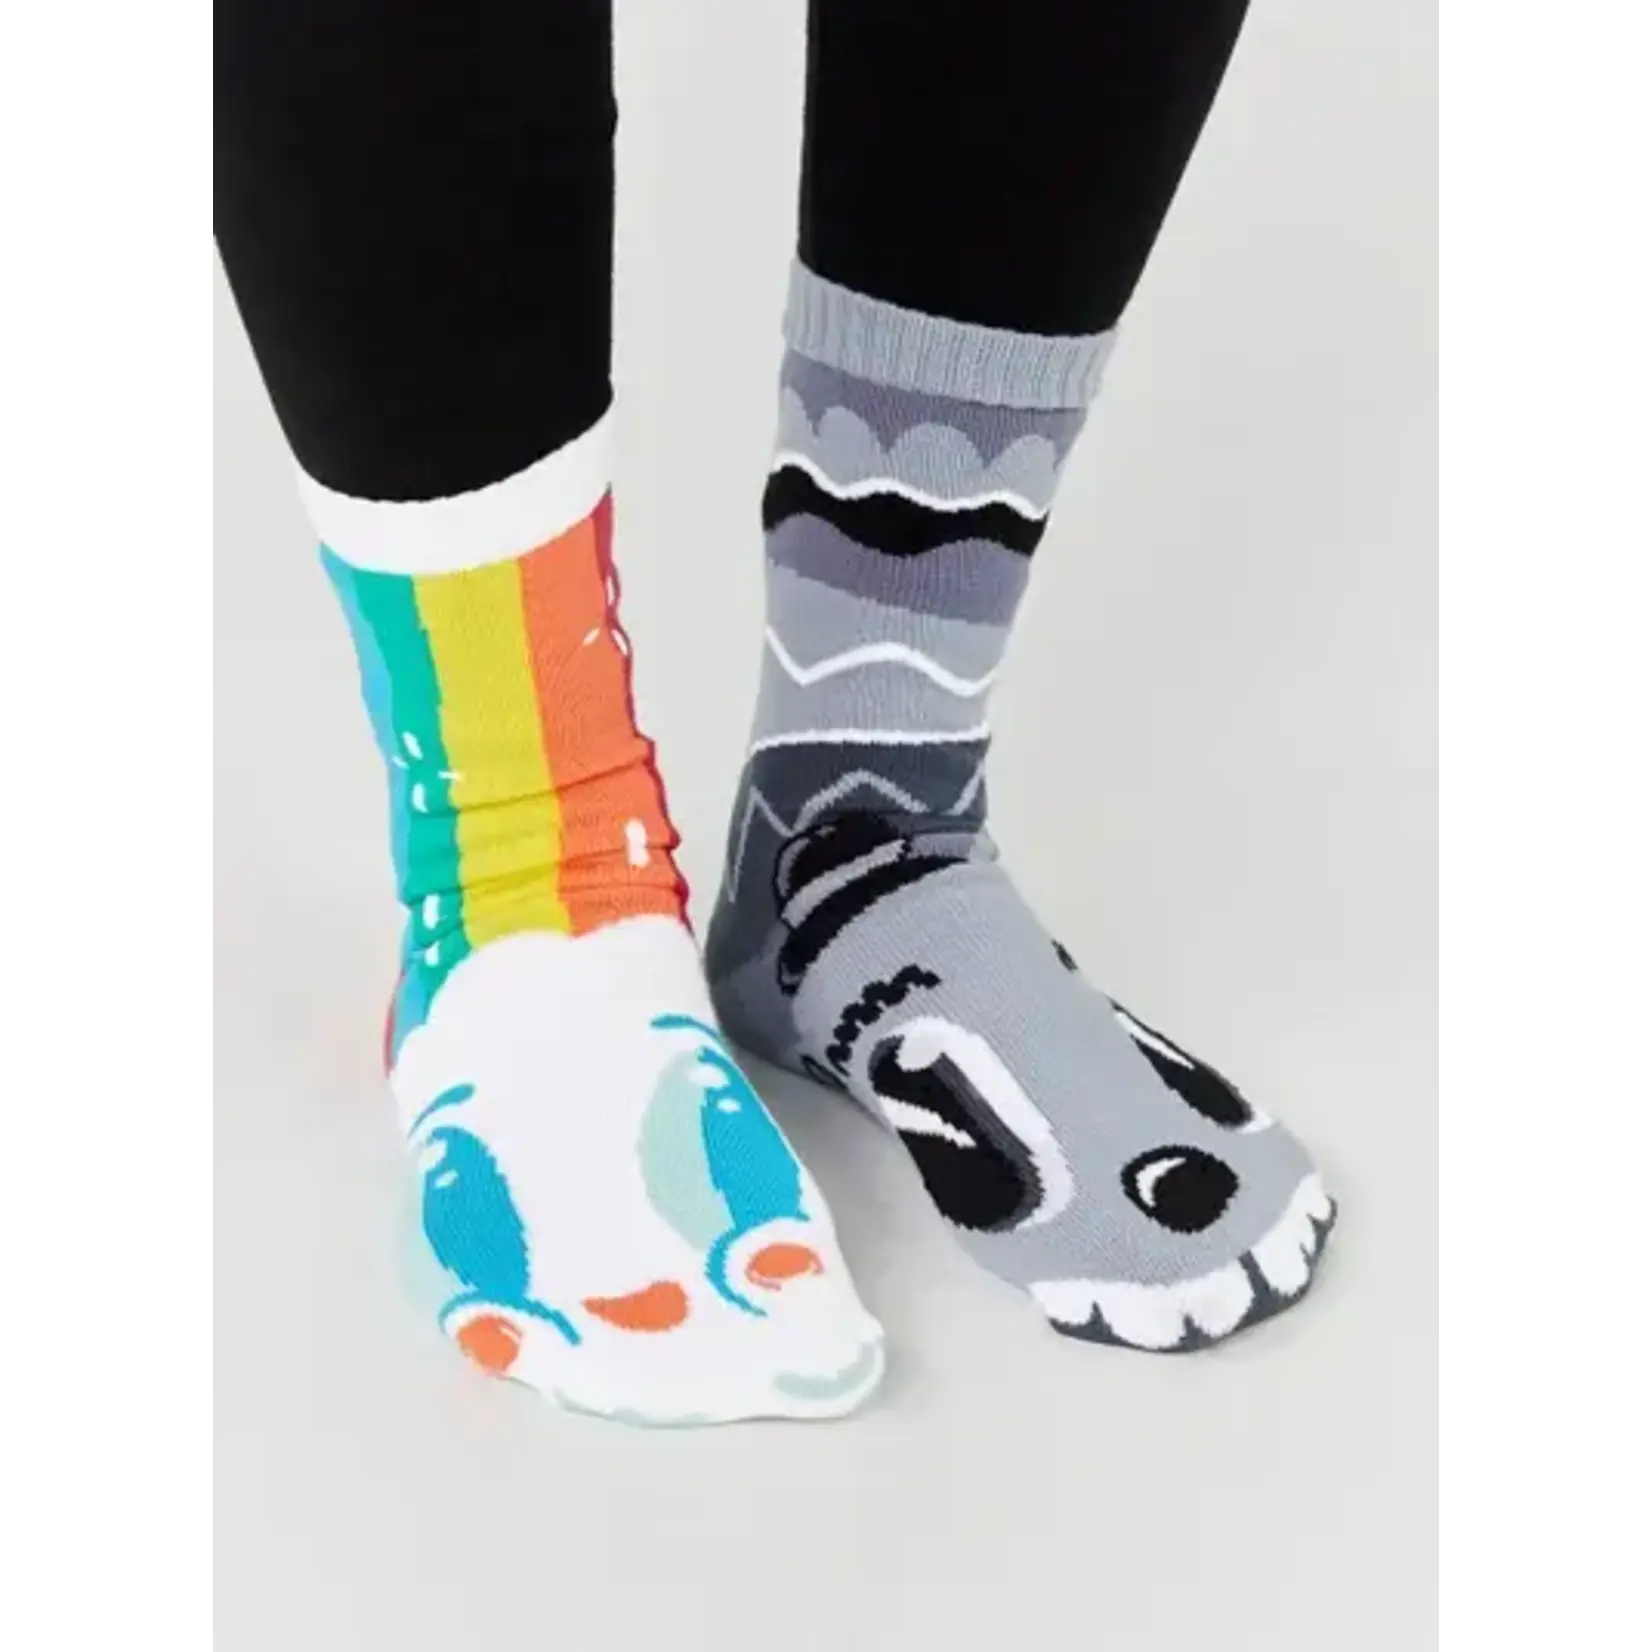 Pals Socks - Rainbowface & Mr. Gray, Adult 13+